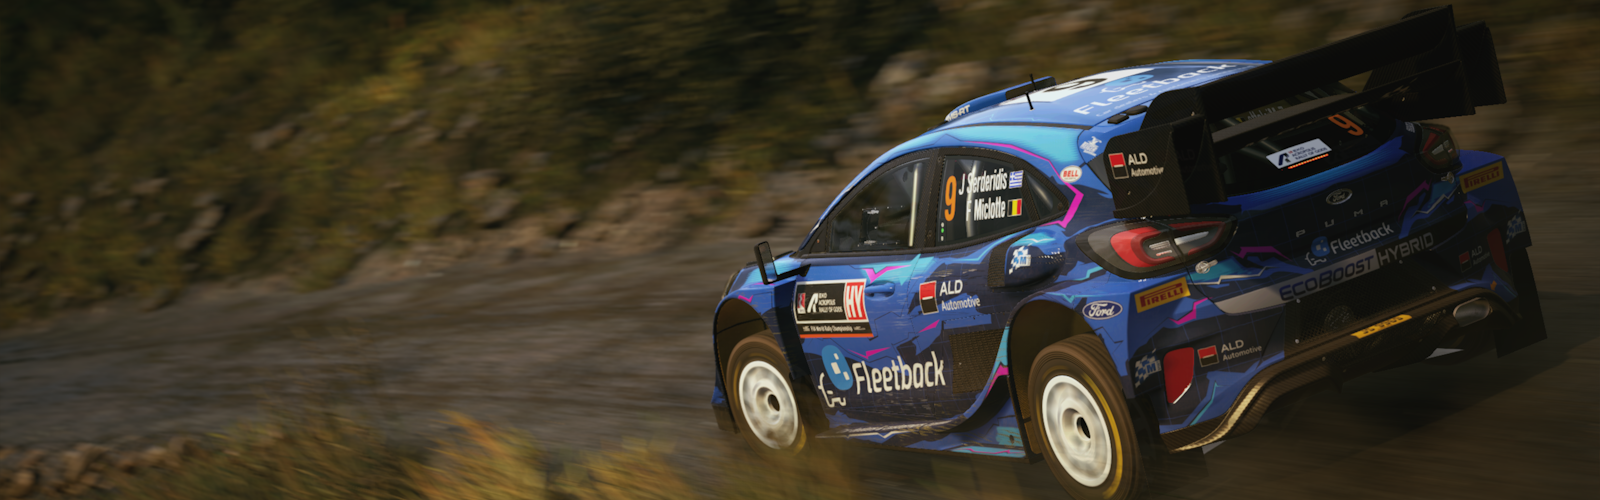 WRC_ford18